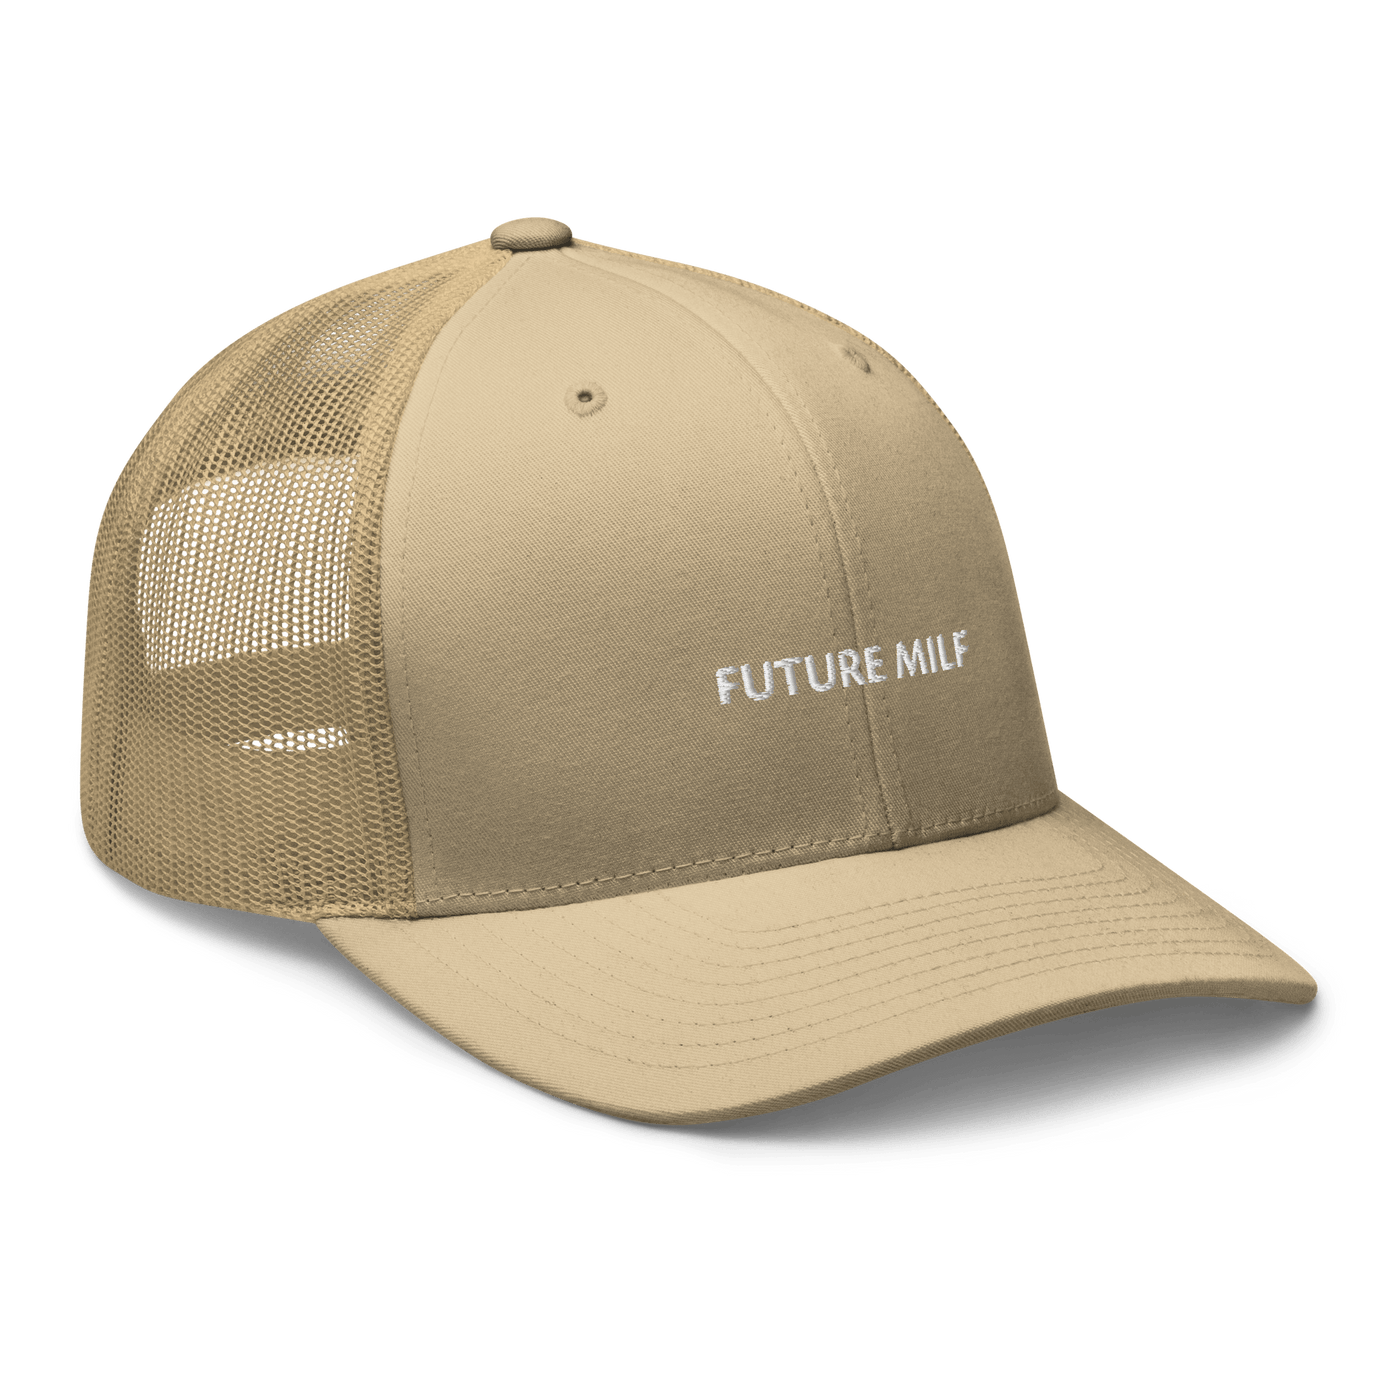 Future Milf Trucker Cap - Khaki - - Just Another Cap Store